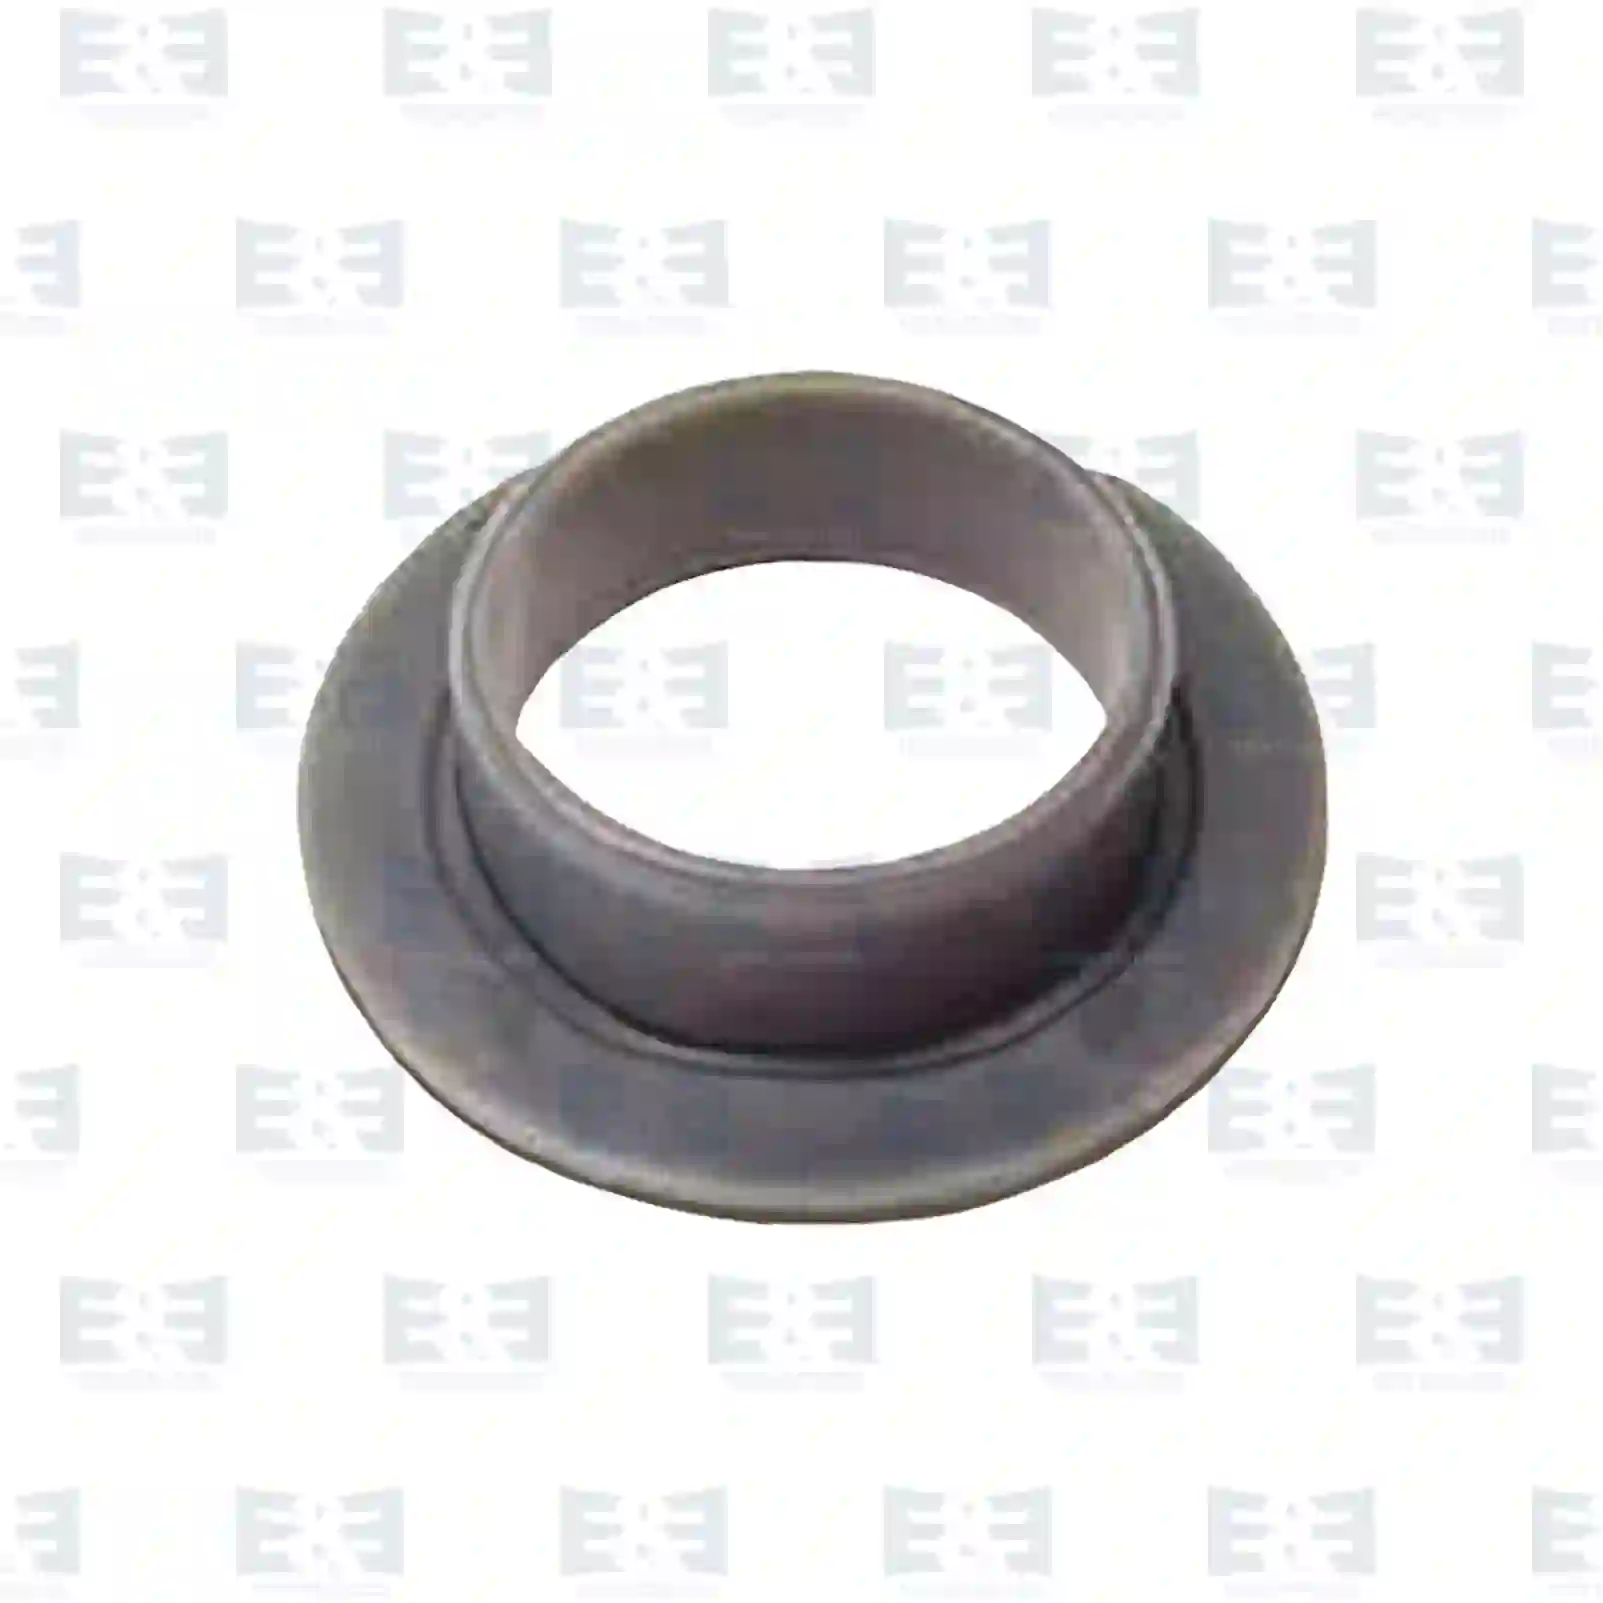  Plain bearing || E&E Truck Spare Parts | Truck Spare Parts, Auotomotive Spare Parts